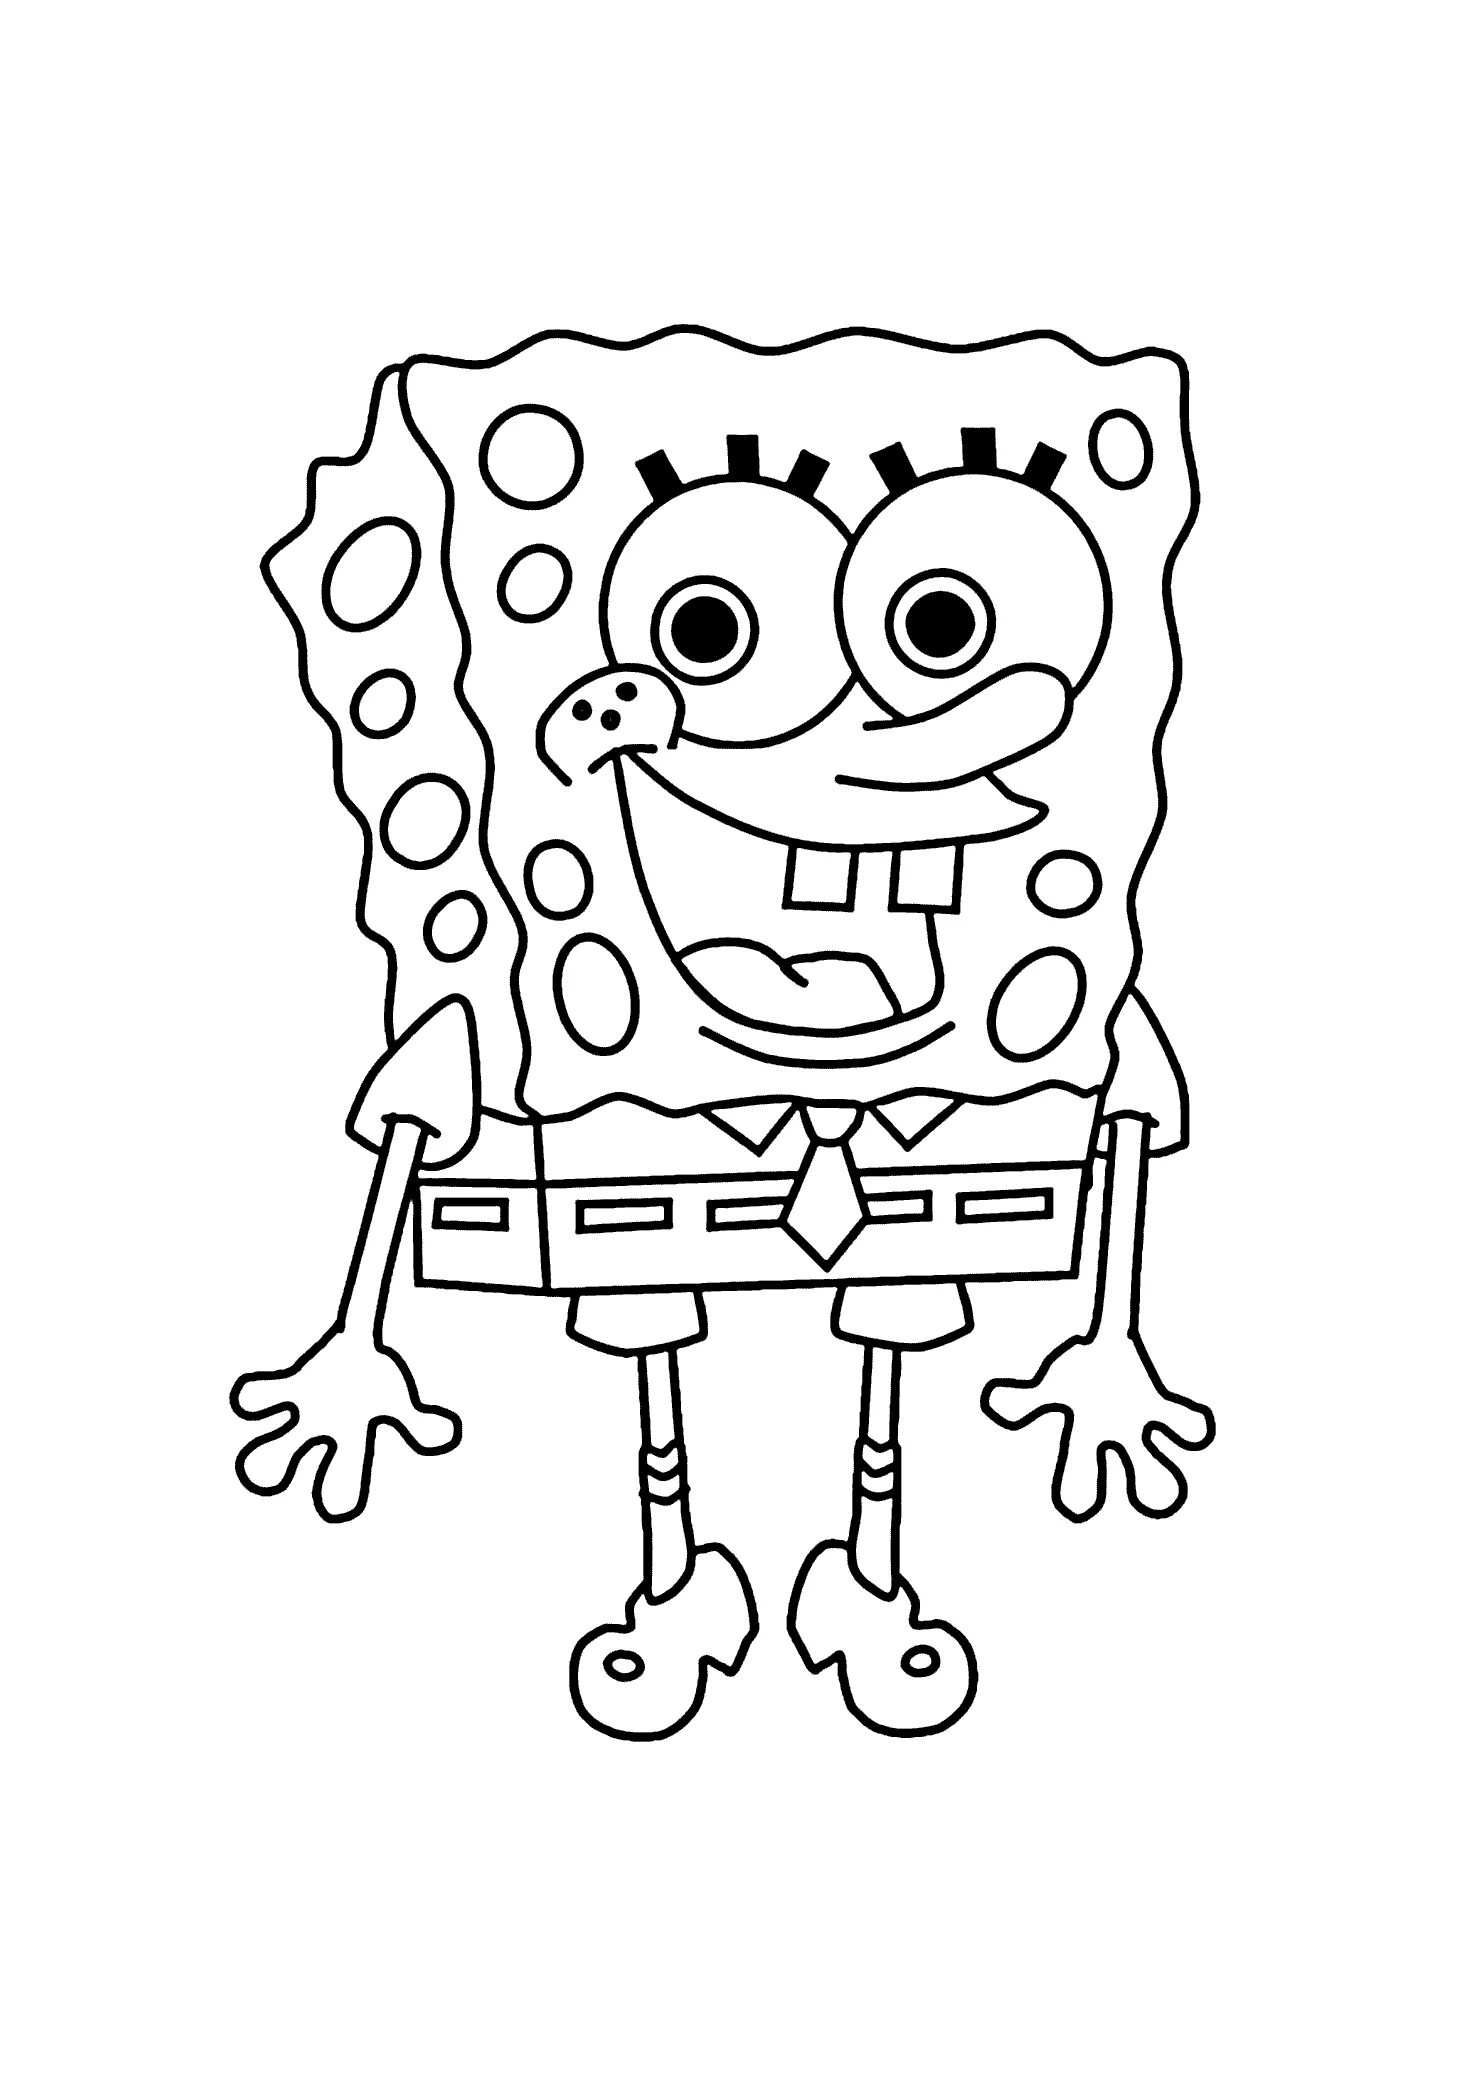 Spongebob pattern #1